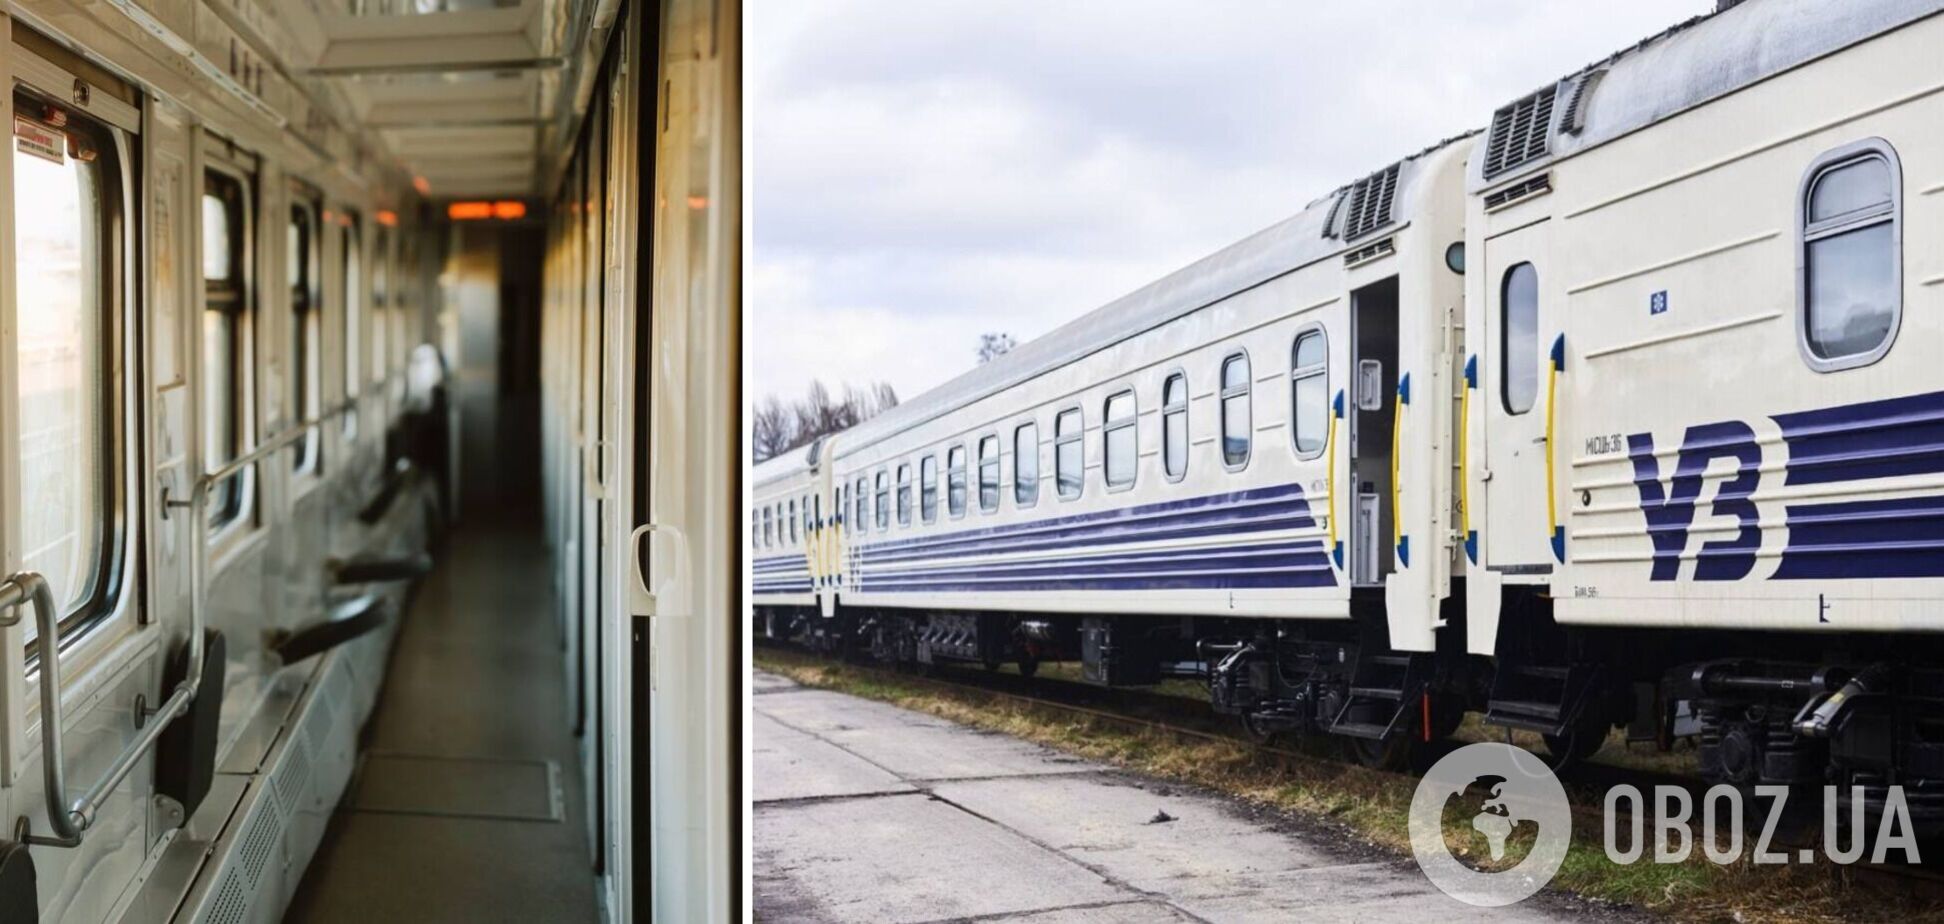 Українцям дозволяють не платити за квитки на поїзд повну ціну